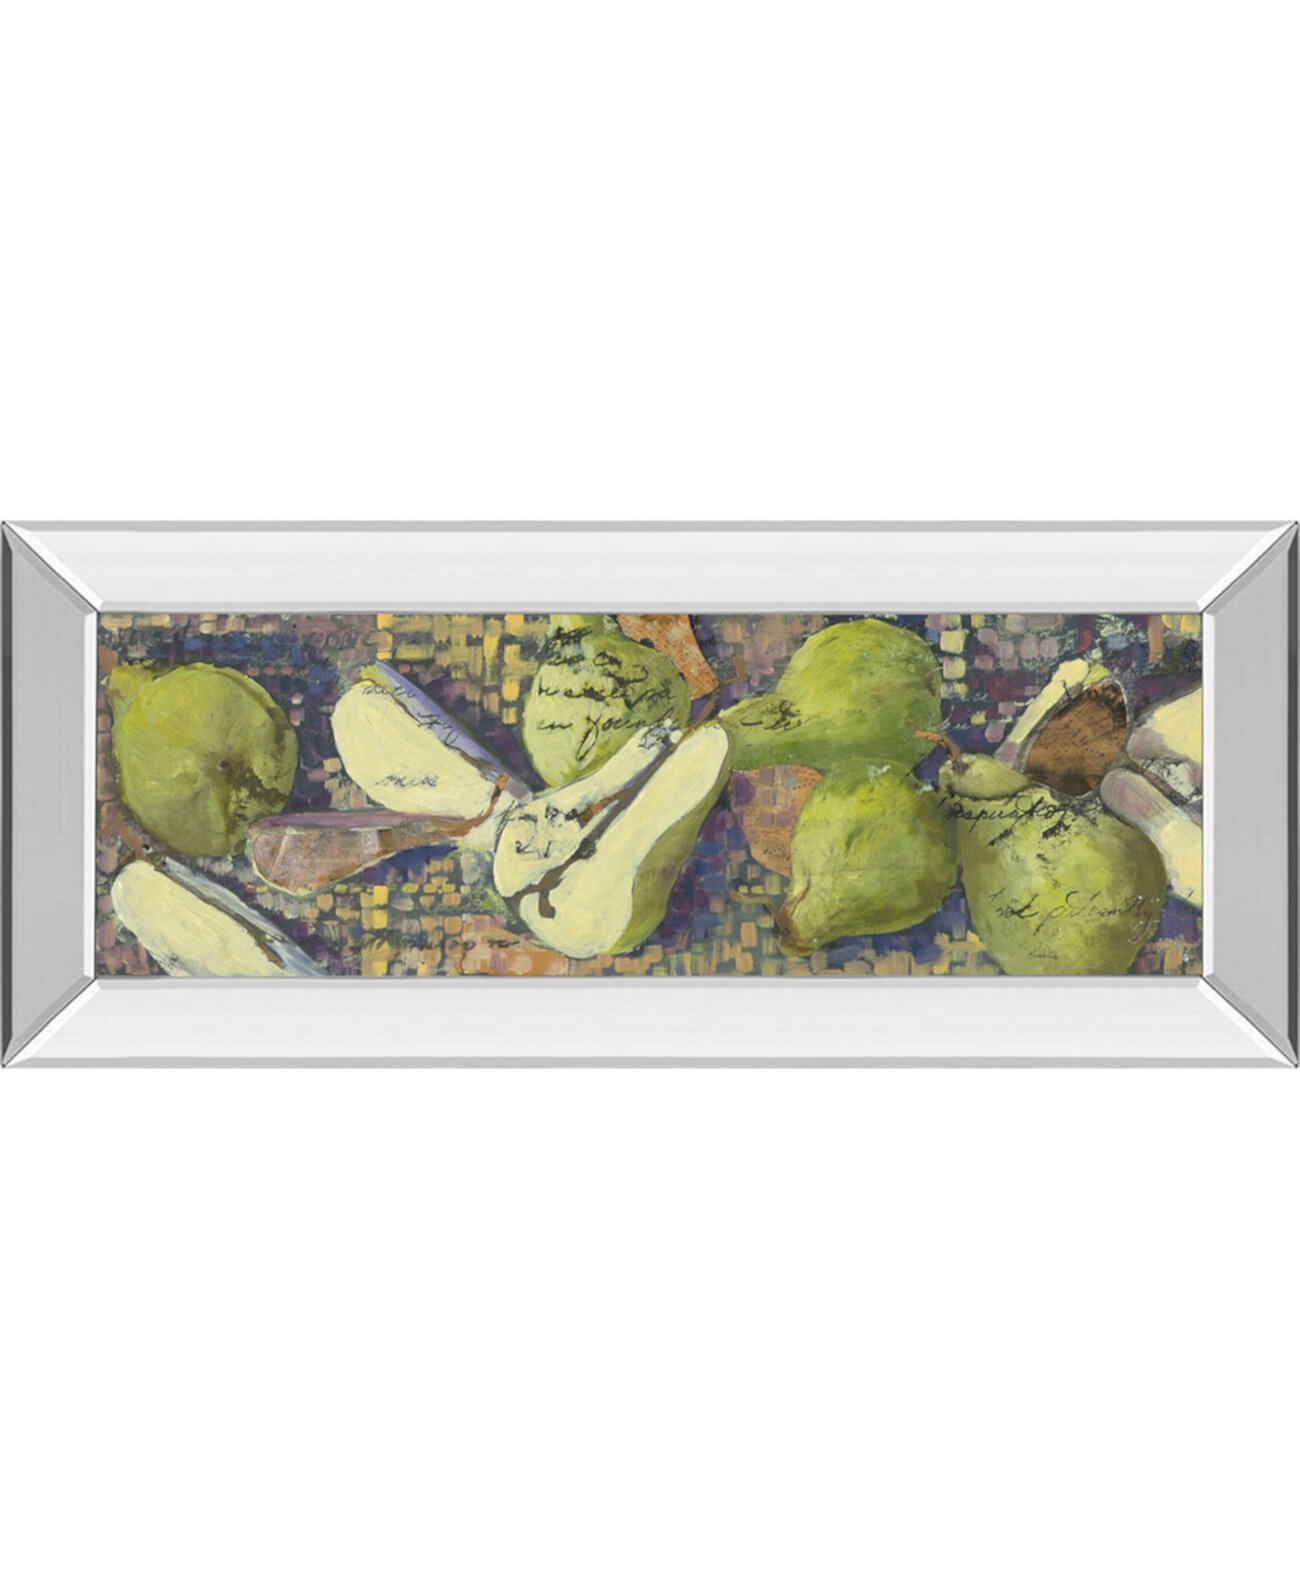 Игристые груши I от Сильвии Рутледж. Настенное искусство в зеркальной раме - 18 "x 42" Classy Art